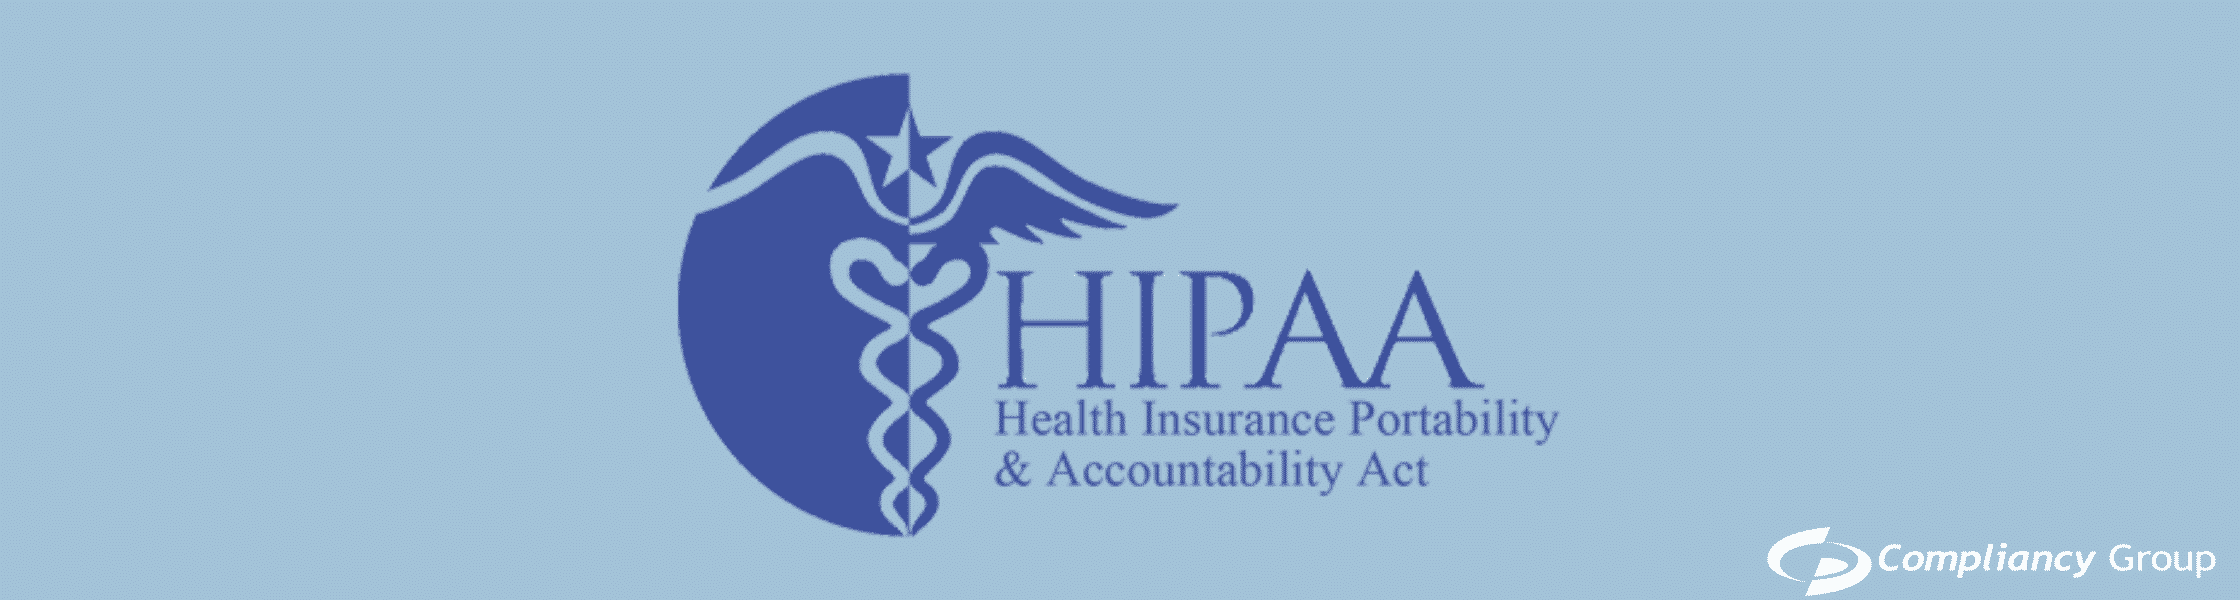 HIPAA Accounting